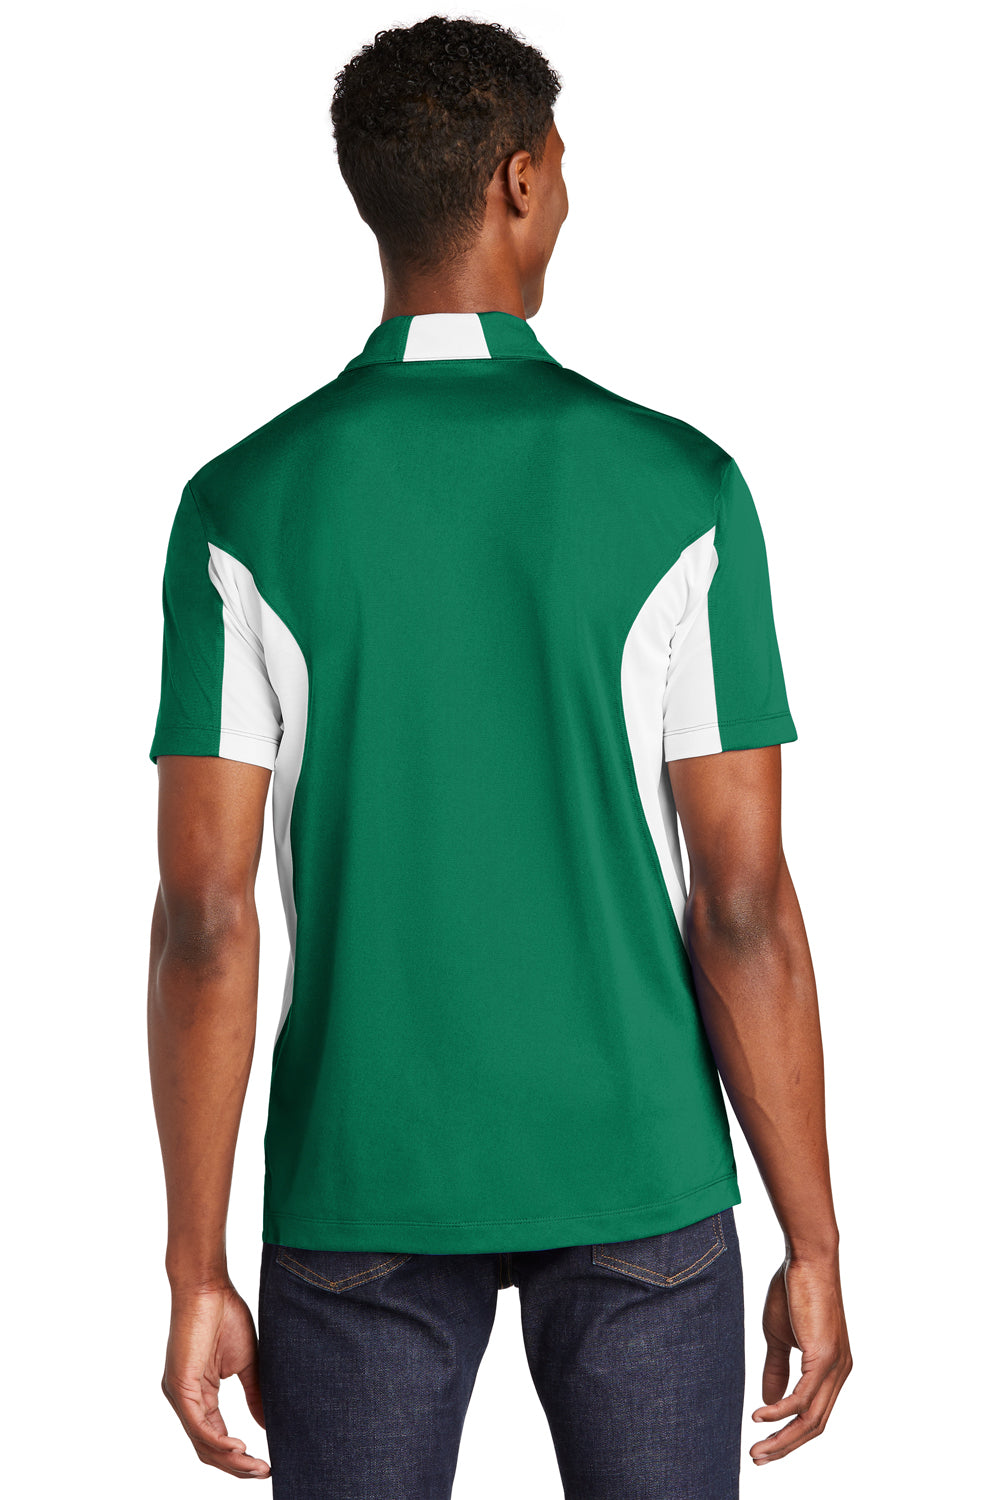 Sport-Tek ST655 Mens Sport-Wick Moisture Wicking Short Sleeve Polo Shirt Kelly Green/White Back